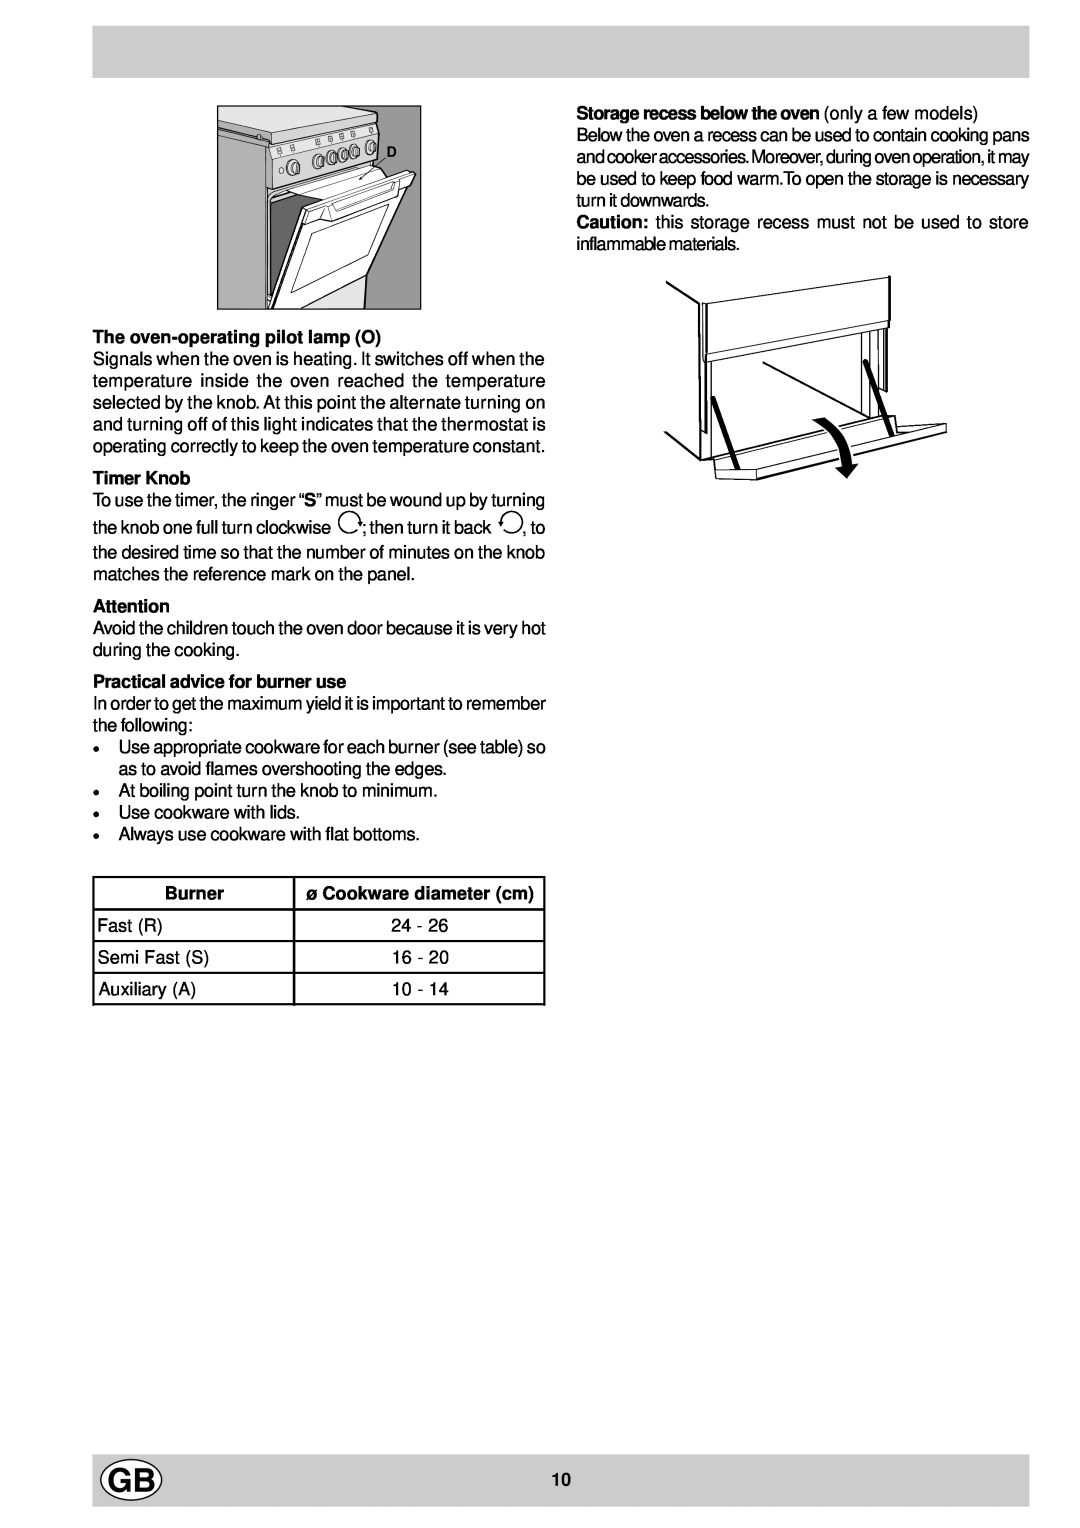 Indesit K3G11/G manual The oven-operatingpilot lamp O, Timer Knob, Practical advice for burner use, Burner 